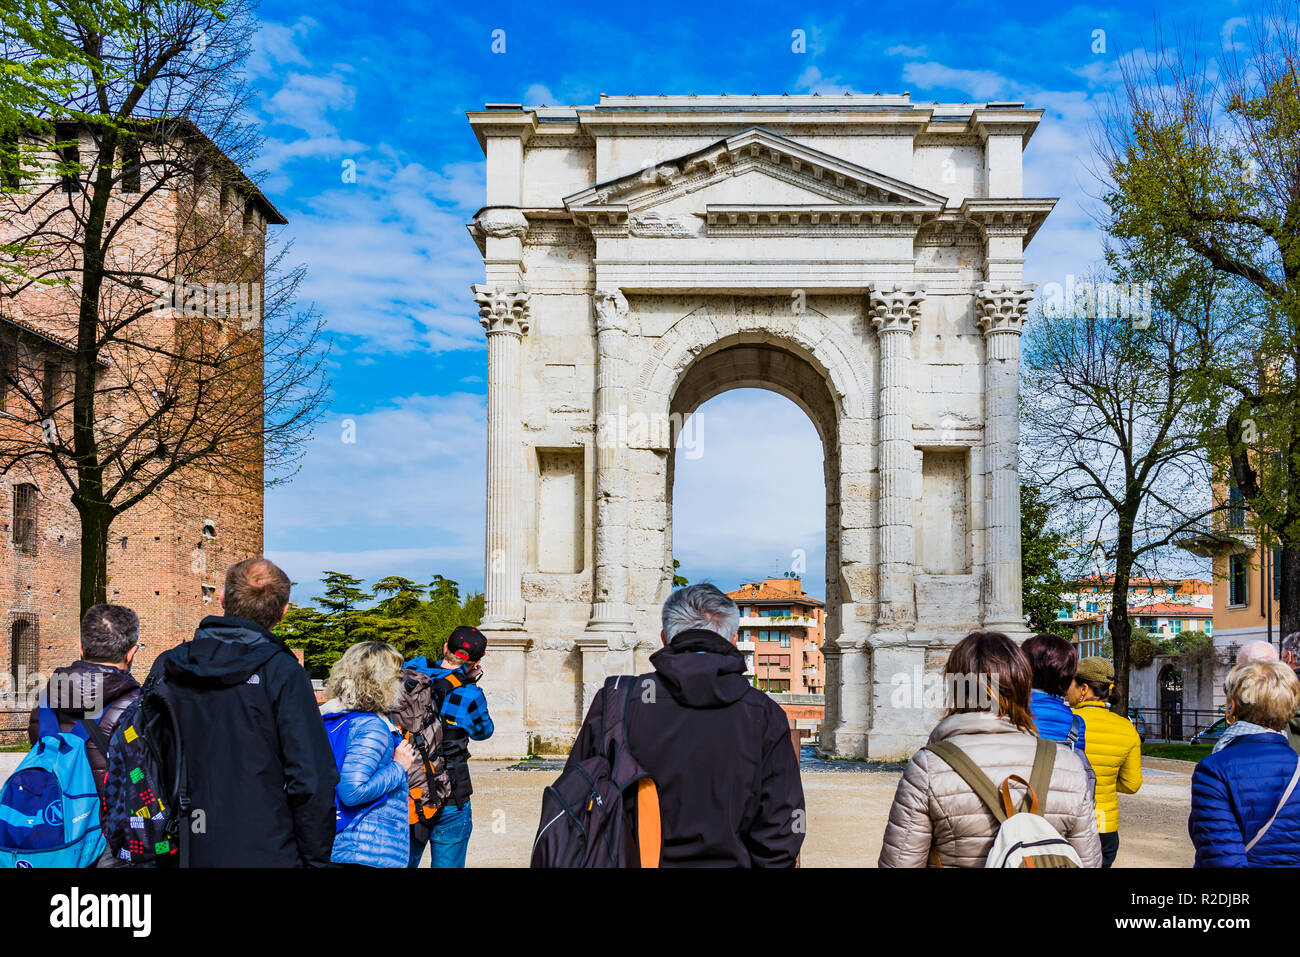 L'Arco dei Gavi è una struttura antica di Verona. Esso è stato costruito dalla Gens Gavia, una nobile famiglia romana che avevano le loro città natale in Verona. Durante il Foto Stock